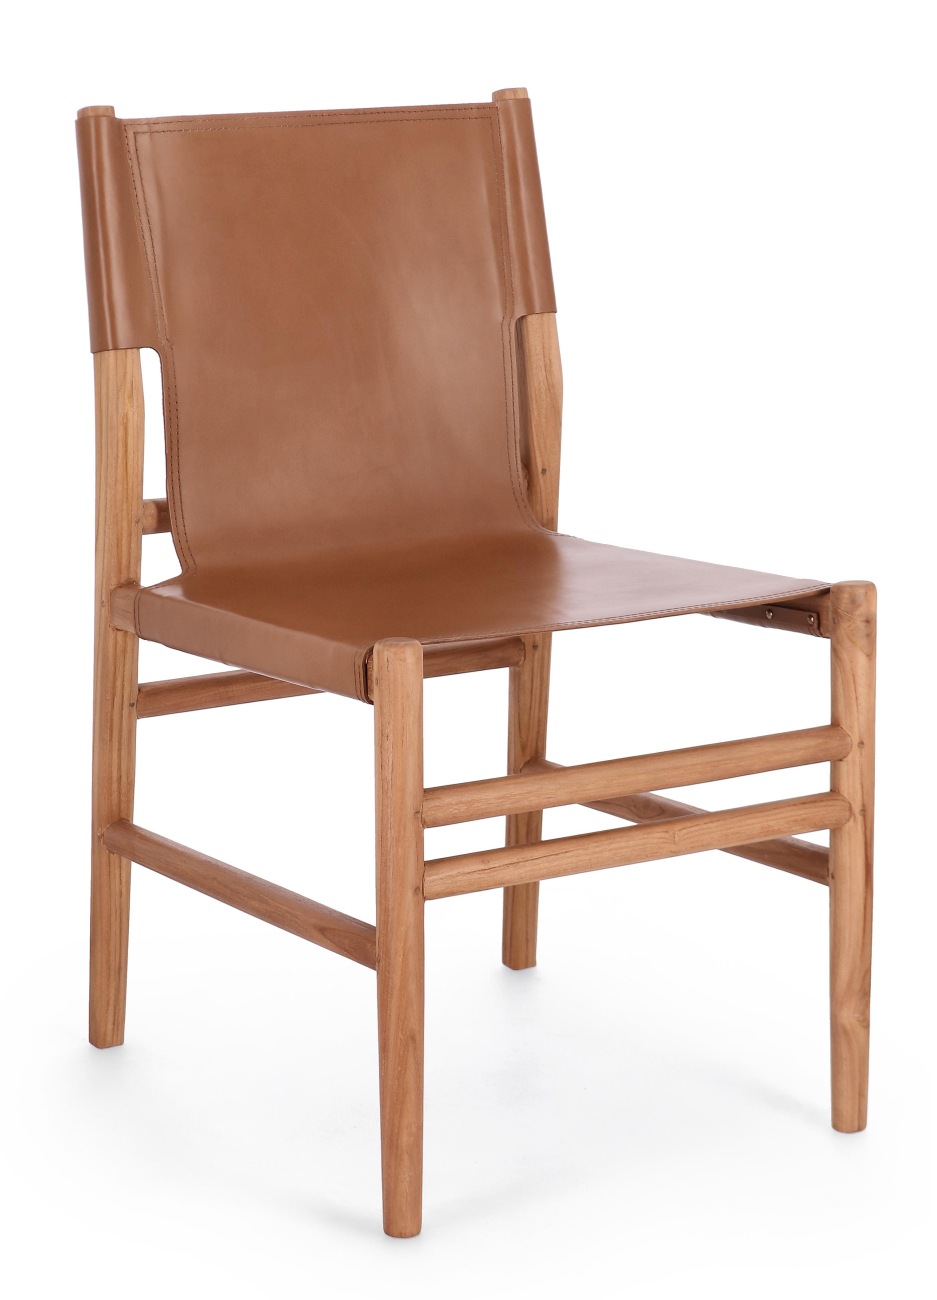 Der Esszimmerstuhl Caroline überzeugt mit seinem modernen Stil. Gefertigt wurde er aus Leder, welches einen Cognac Farbton besitzt. Das Gestell ist aus Teakholz und hat eine natürliche Farbe. Der Stuhl besitzt eine Sitzhöhe von 47 cm.